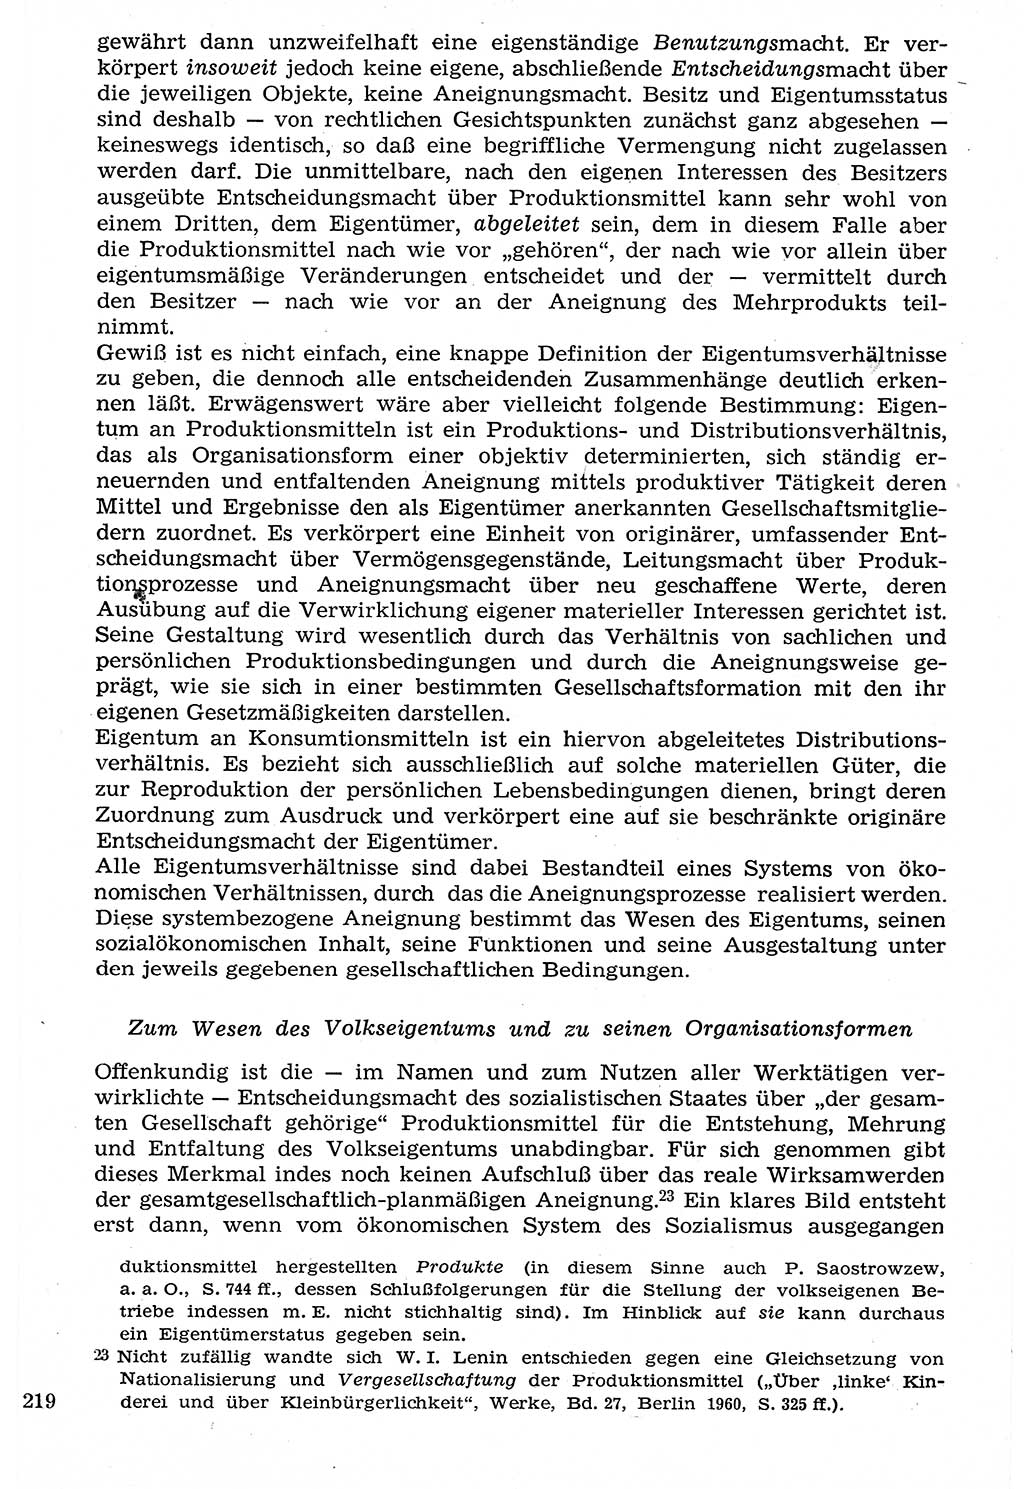 Staat und Recht (StuR), 17. Jahrgang [Deutsche Demokratische Republik (DDR)] 1968, Seite 219 (StuR DDR 1968, S. 219)